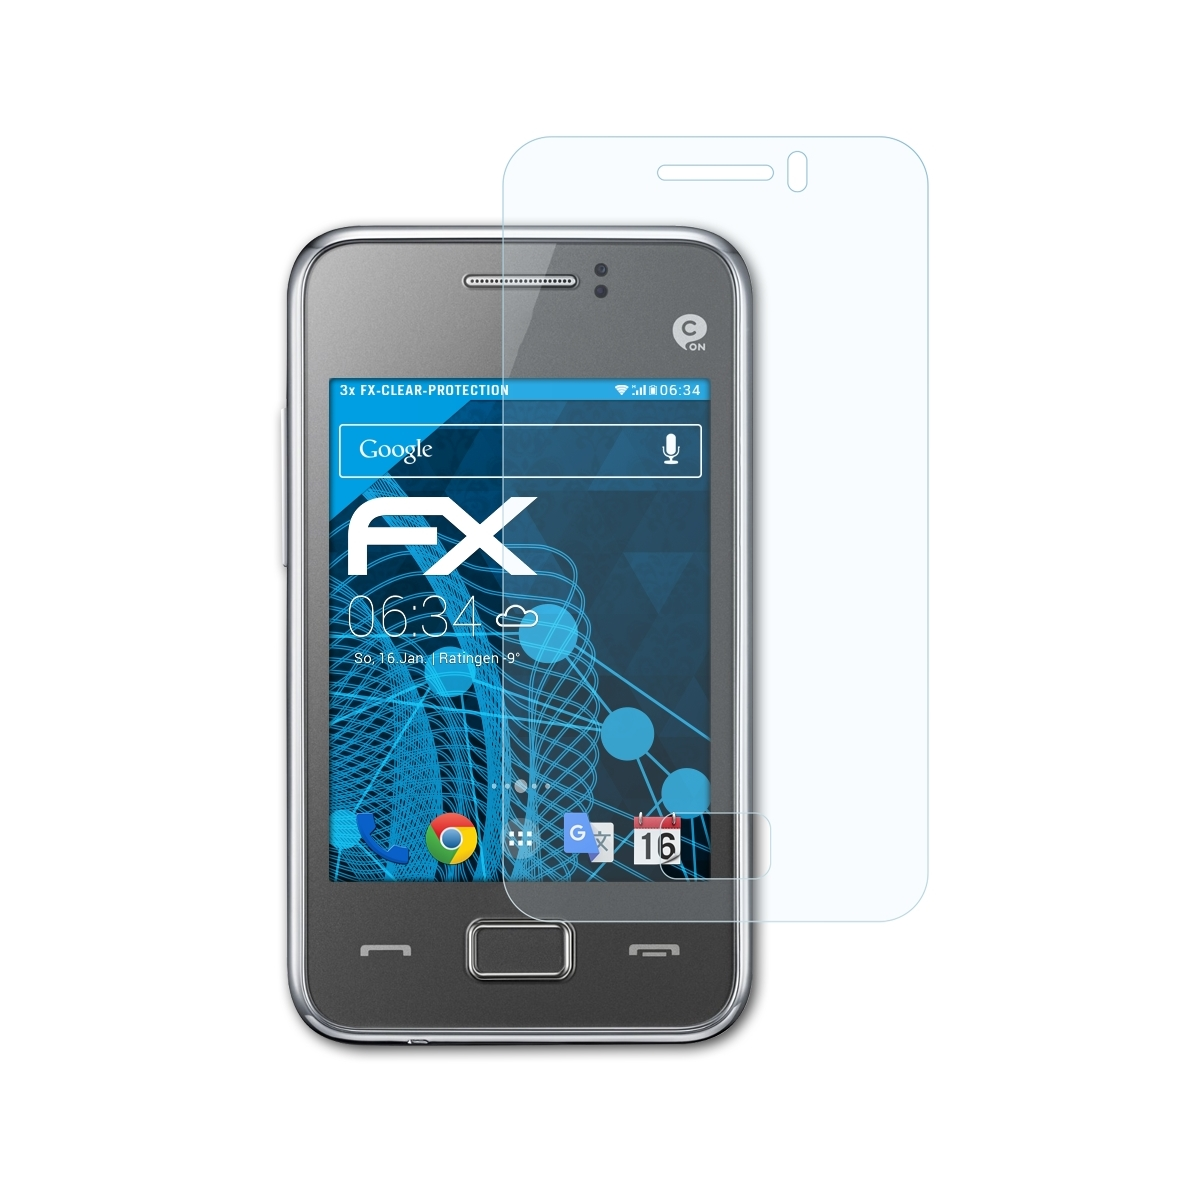 Rex ATFOLIX Displayschutz(für 80 FX-Clear (GT-S5222R)) 3x Samsung